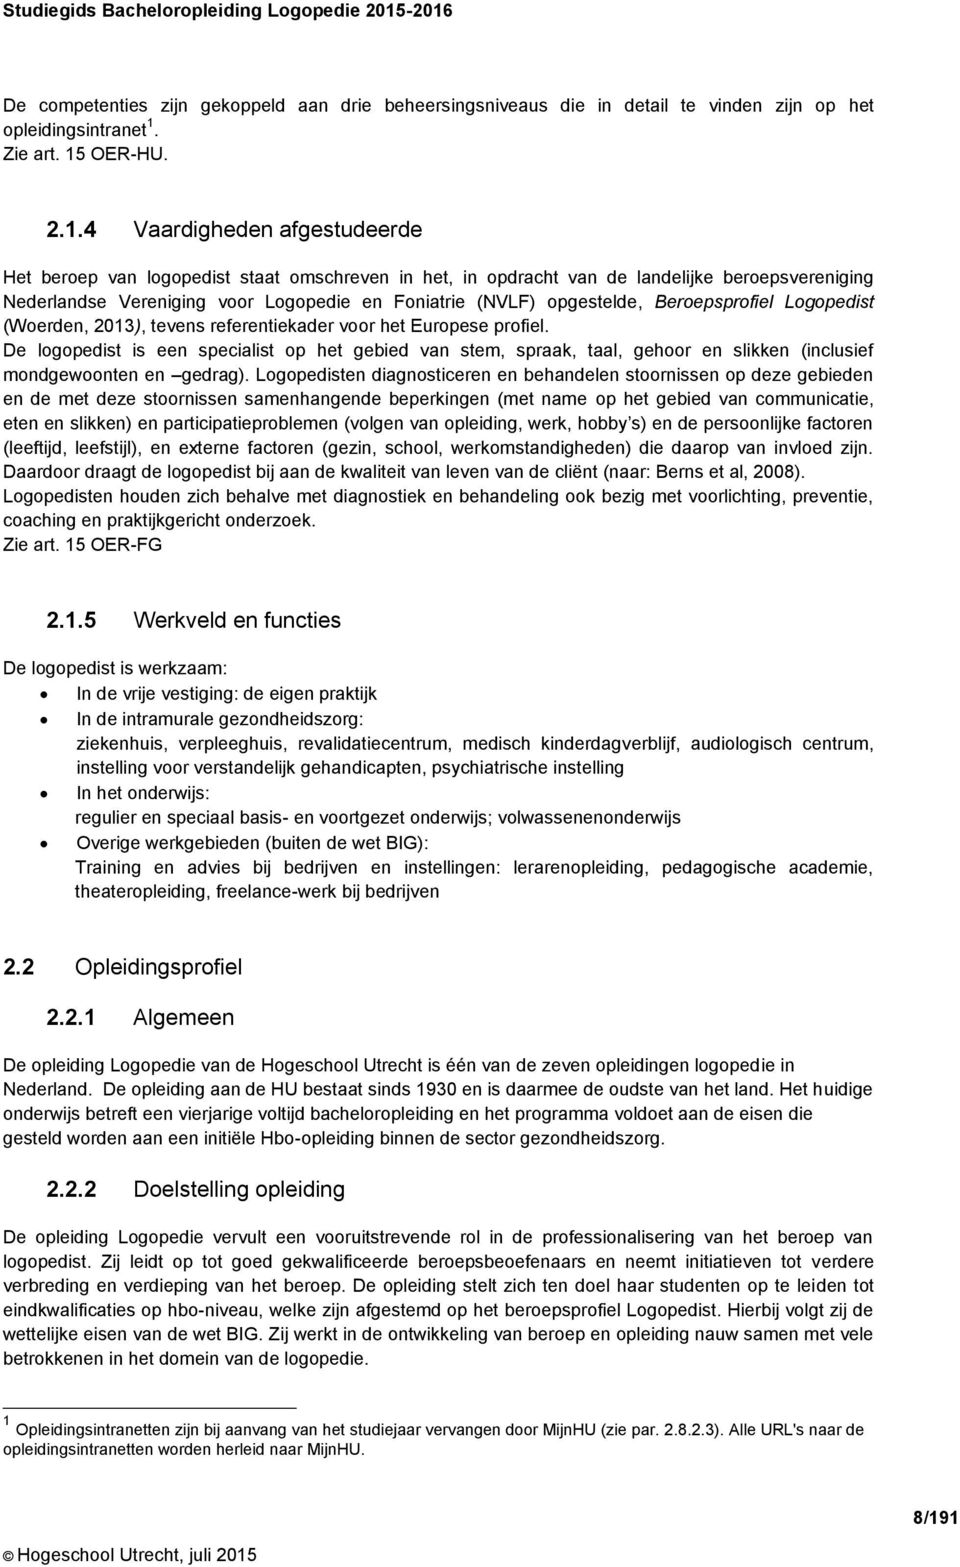 logopedist staat omschreven in het, in opdracht van de landelijke beroepsvereniging Nederlandse Vereniging voor Logopedie en Foniatrie (NVLF) opgestelde, Beroepsprofiel Logopedist (Woerden, 2013),